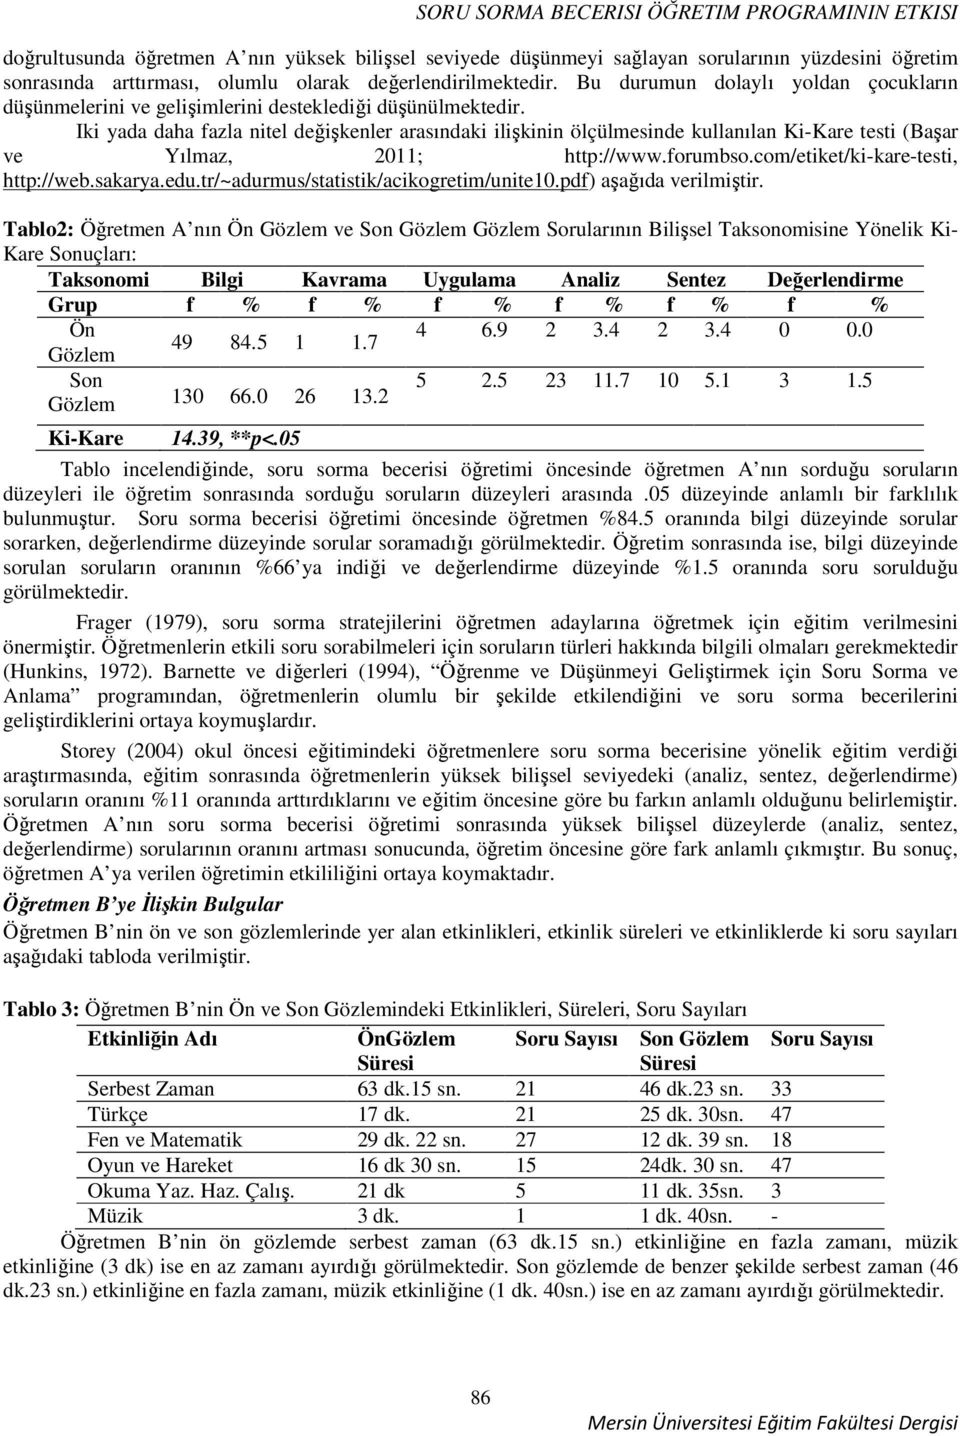 Iki yada daha fazla nitel değişkenler arasındaki ilişkinin ölçülmesinde kullanılan Ki-Kare testi (Başar ve Yılmaz, 2011; http://www.forumbso.com/etiket/ki-kare-testi, http://web.sakarya.edu.